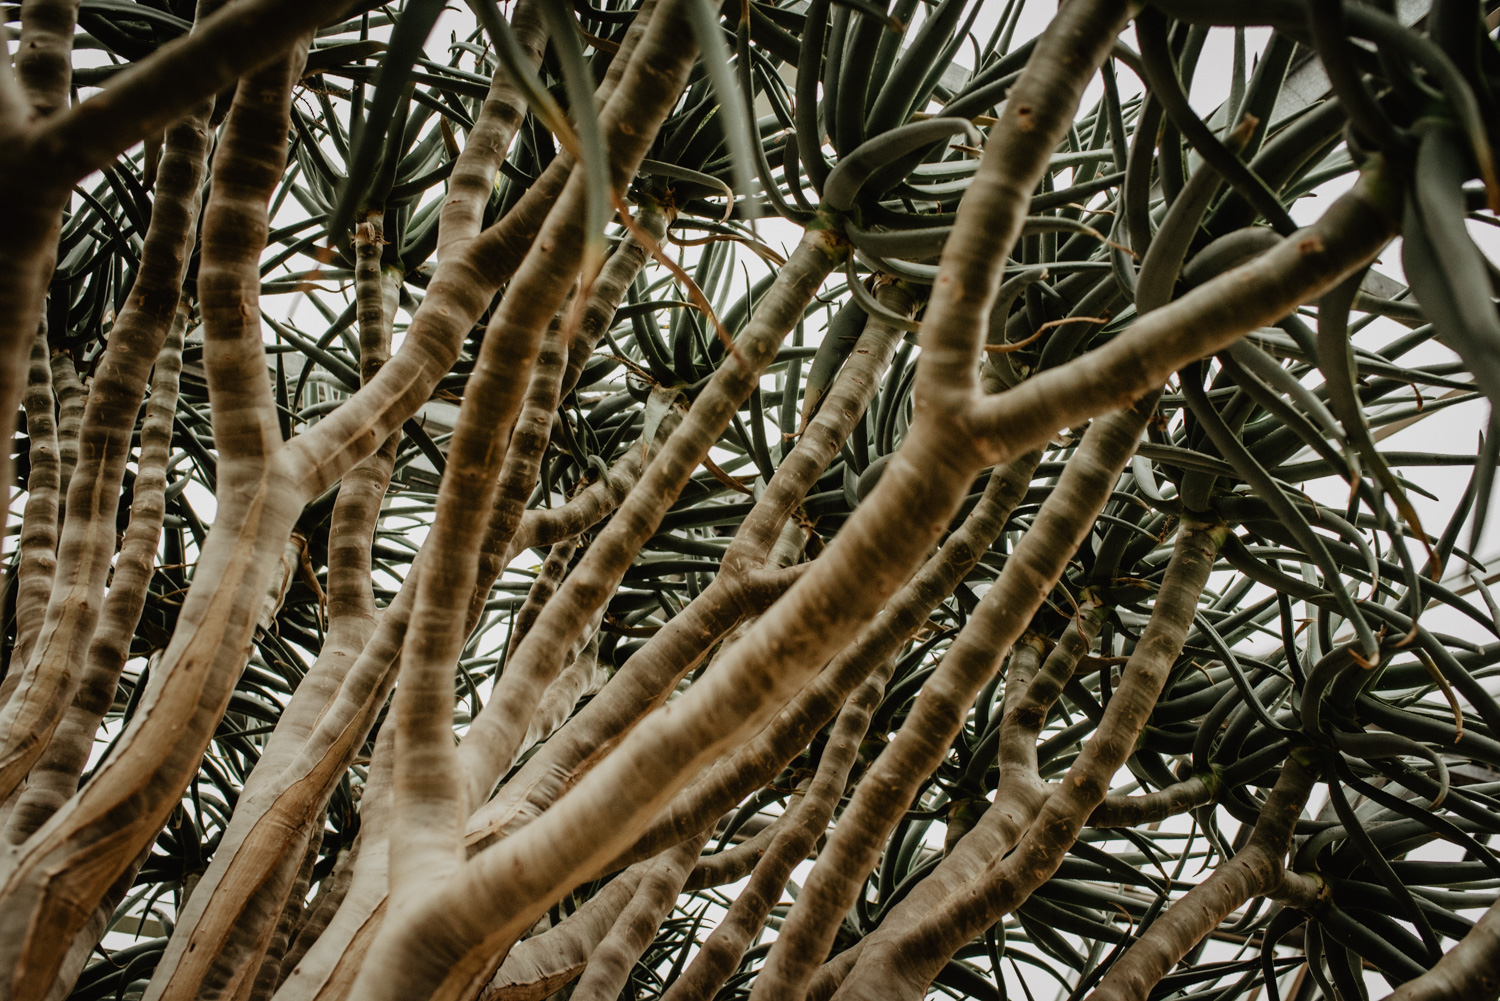 Detailfoto einer mediterranen Pflanze.